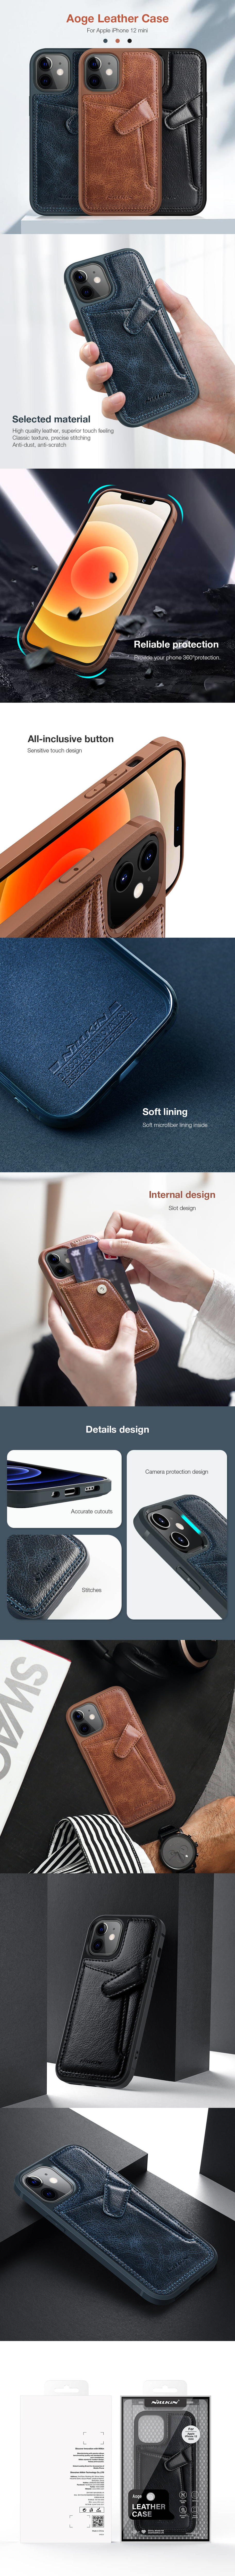 کاور اورجینال نیلکین مدل Aoge Leather Case مناسب برای گوشی موبایل آیفون 12 مینی